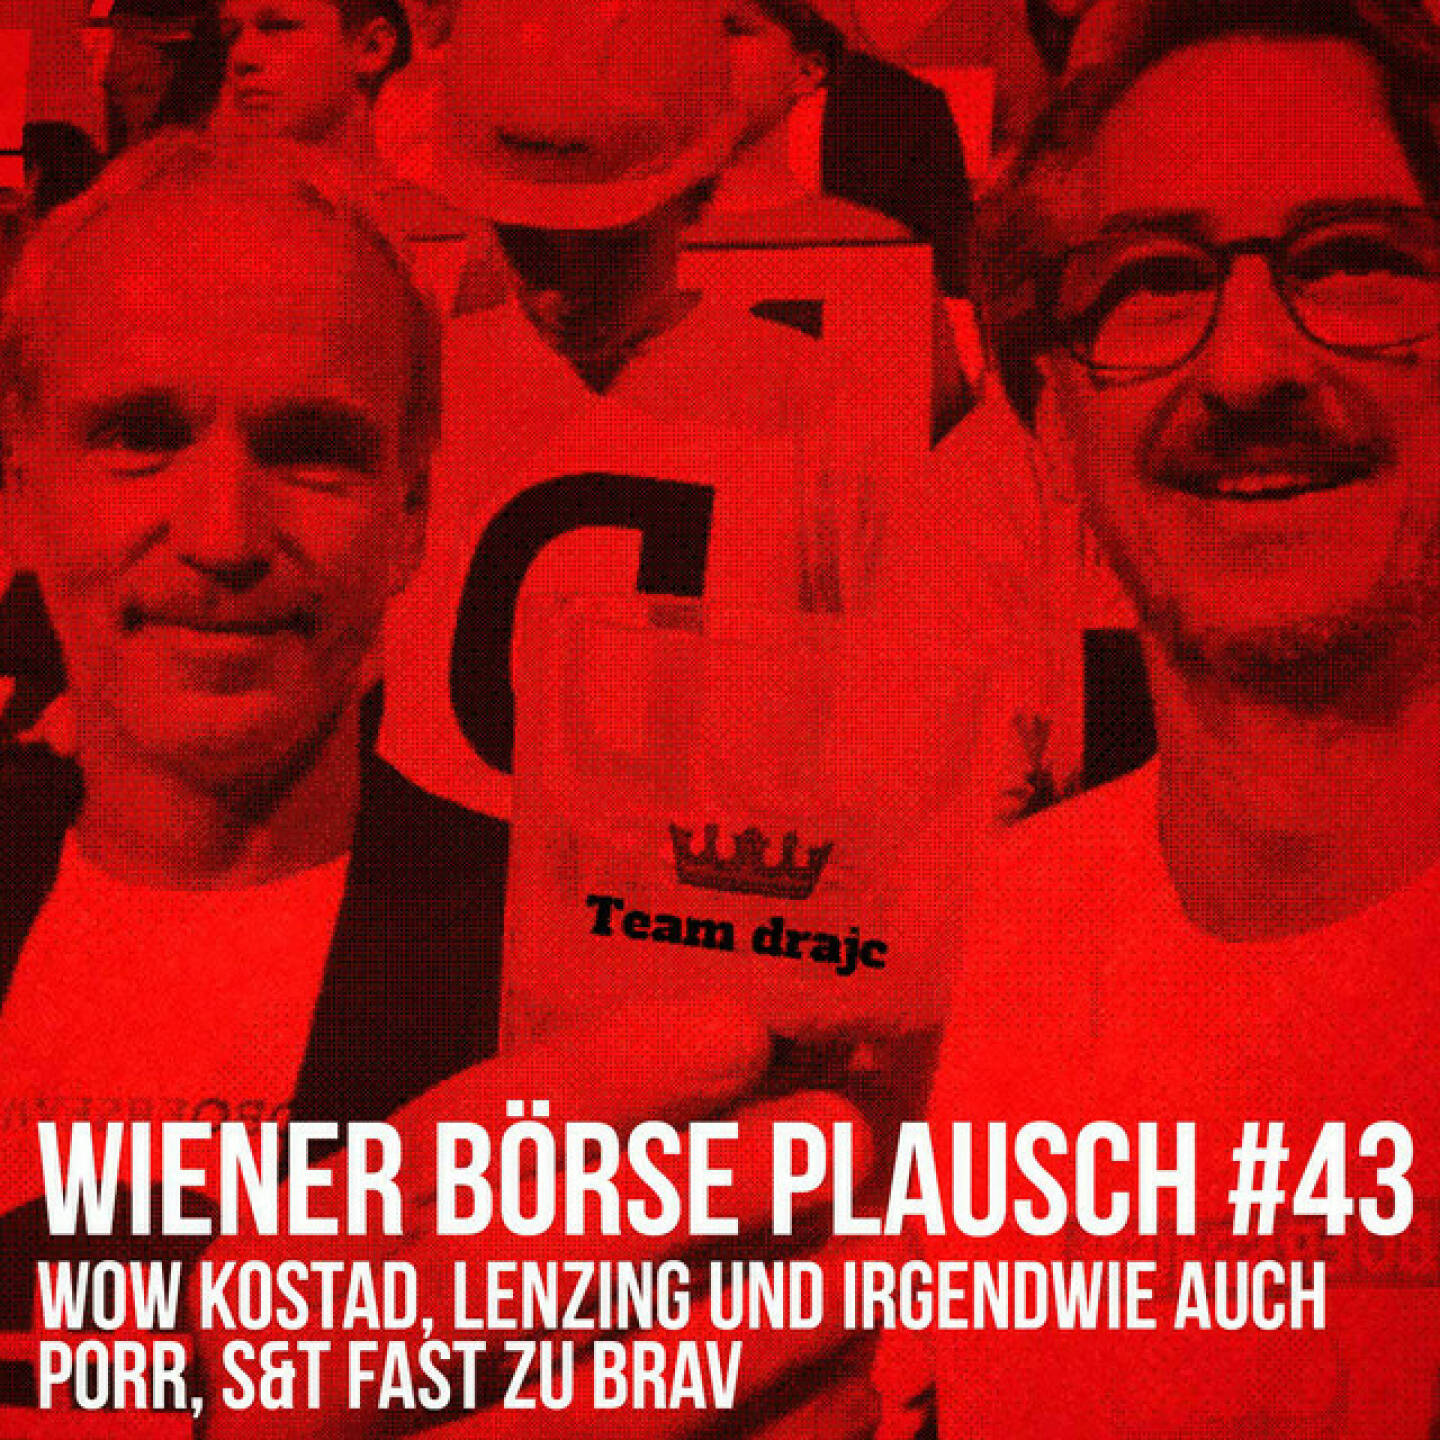 https://open.spotify.com/episode/70YTNOCB9xGeNAkbbZLoOp
Wiener Börse Plausch #43: Wow Kostad, Lenzing und irgendwie auch Porr, S&T fast zu brav - <br><p>Team drajc, das sind die Börse Social Network Eigentümer Christian Drastil und Josef Chladek, quatscht in Wiener Börse Plausch #43 wieder über das aktuelle Geschehen in Wien. Heute geht es um <strong>Lenzing</strong>, die beiden Trios <strong>Lenzing</strong>, <strong>Amag</strong> und <strong>Semperit</strong> bzw. <strong>Porr</strong>, <strong>Agrana</strong> und <strong>FACC</strong>, ein Wow zu <strong>Kostad</strong>, eine <strong>S&T</strong>-Antwort bzw. einen Blick auf alte Umsatzrekorde.</p>
<p>Erwähnt werden: </p>
<ul>
<li>Kostad im „Der Österreichische Nachhaltigkeitspodcast“ <a href=https://open.spotify.com/episode/615vFduY7gnn1fqz2oHdMc>https://open.spotify.com/episode/615vFduY7gnn1fqz2oHdMc</a></li>
</ul>
<p><em>Die Dezember-Folgen vom Wiener Börse Plausch sind präsentiert von der <strong>Rosinger Group</strong>, die sich mit einem Angebot an Listing-Interessierte UnternehmerInnen richtet und einen Rekord im Rosgix feiern kann.</em></p>
<p><em><strong>Risikohinweis</strong>: Die hier veröffentlichten Gedanken sind weder als Empfehlung noch als ein Angebot oder eine Aufforderung zum An- oder Verkauf von Finanzinstrumenten zu verstehen und sollen auch nicht so verstanden werden. Sie stellen lediglich die persönliche Meinung der Podcastmacher dar. Der Handel mit Finanzprod ukten unterliegt einem Risiko. Sie können Ihr eingesetztes Kapital verlieren.</em></p>